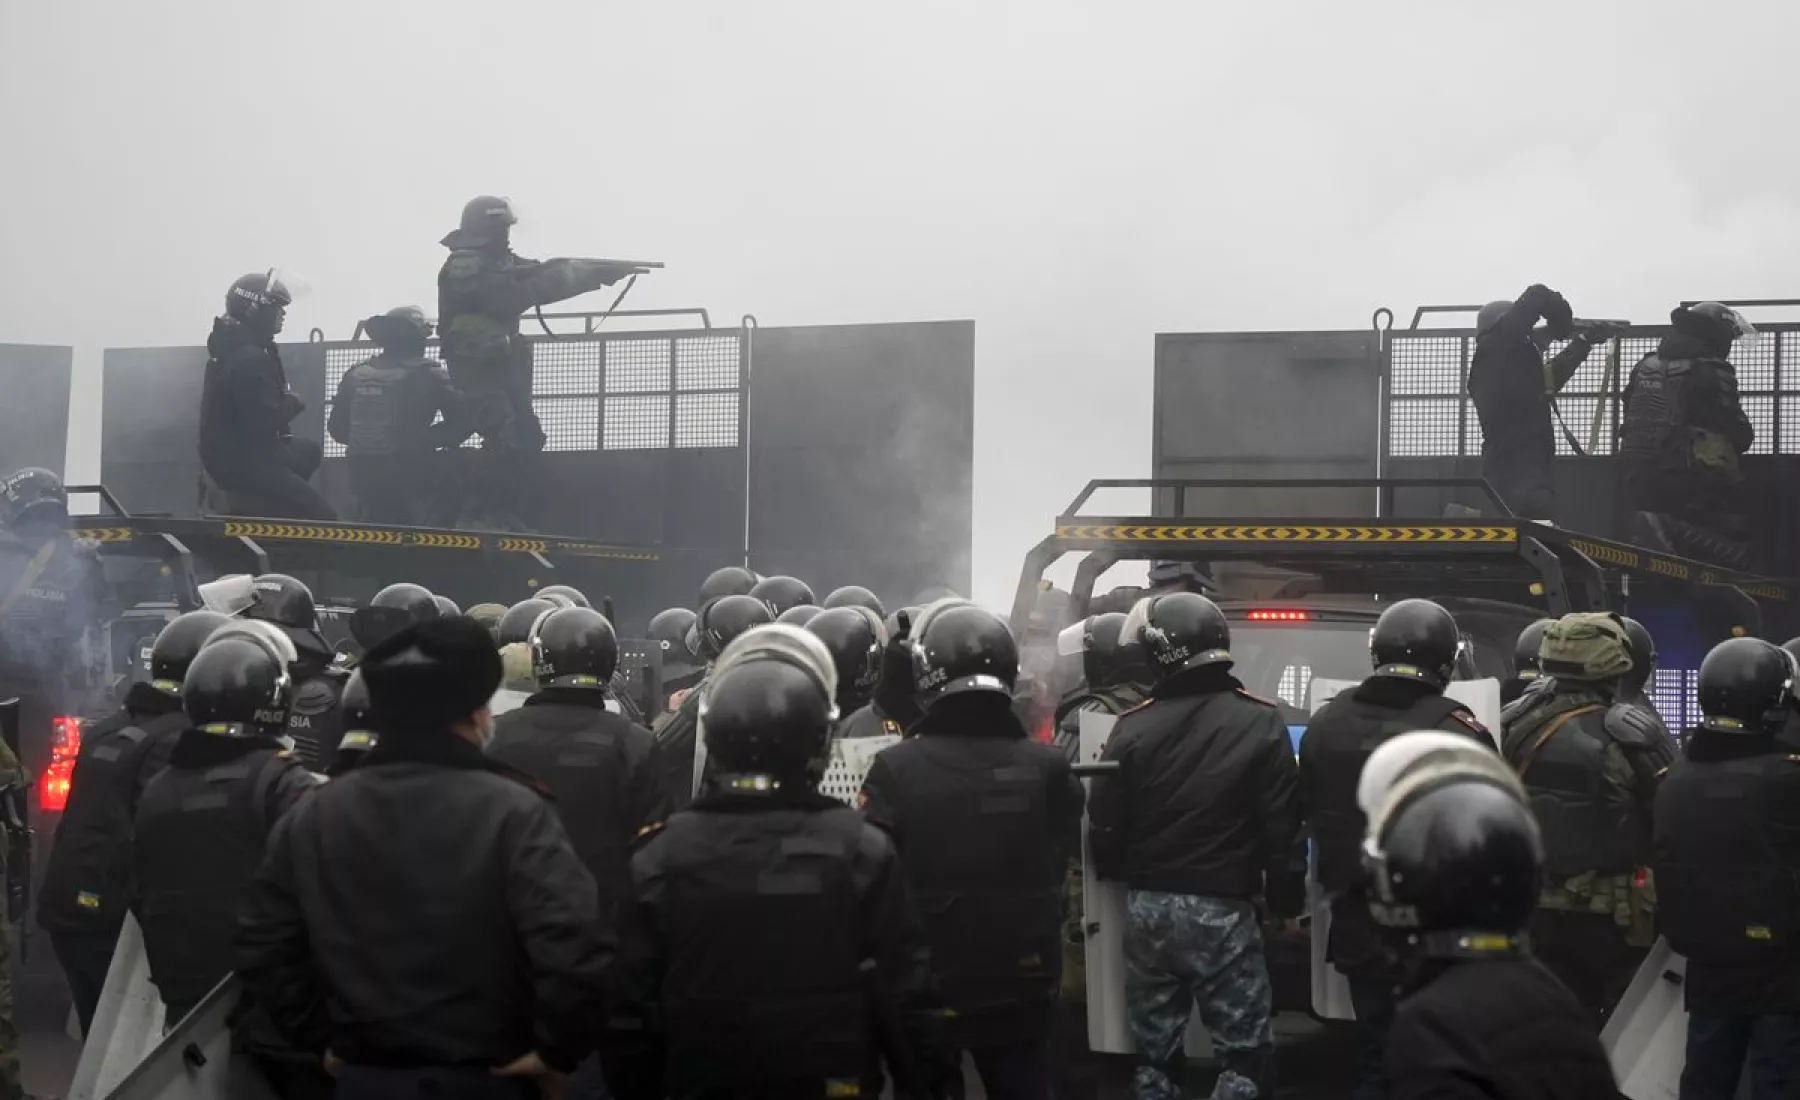  Kasachstan, Almaty: Bereitschaftspolizisten blockieren eine Straße, um Demonstranten aufzuhalten.